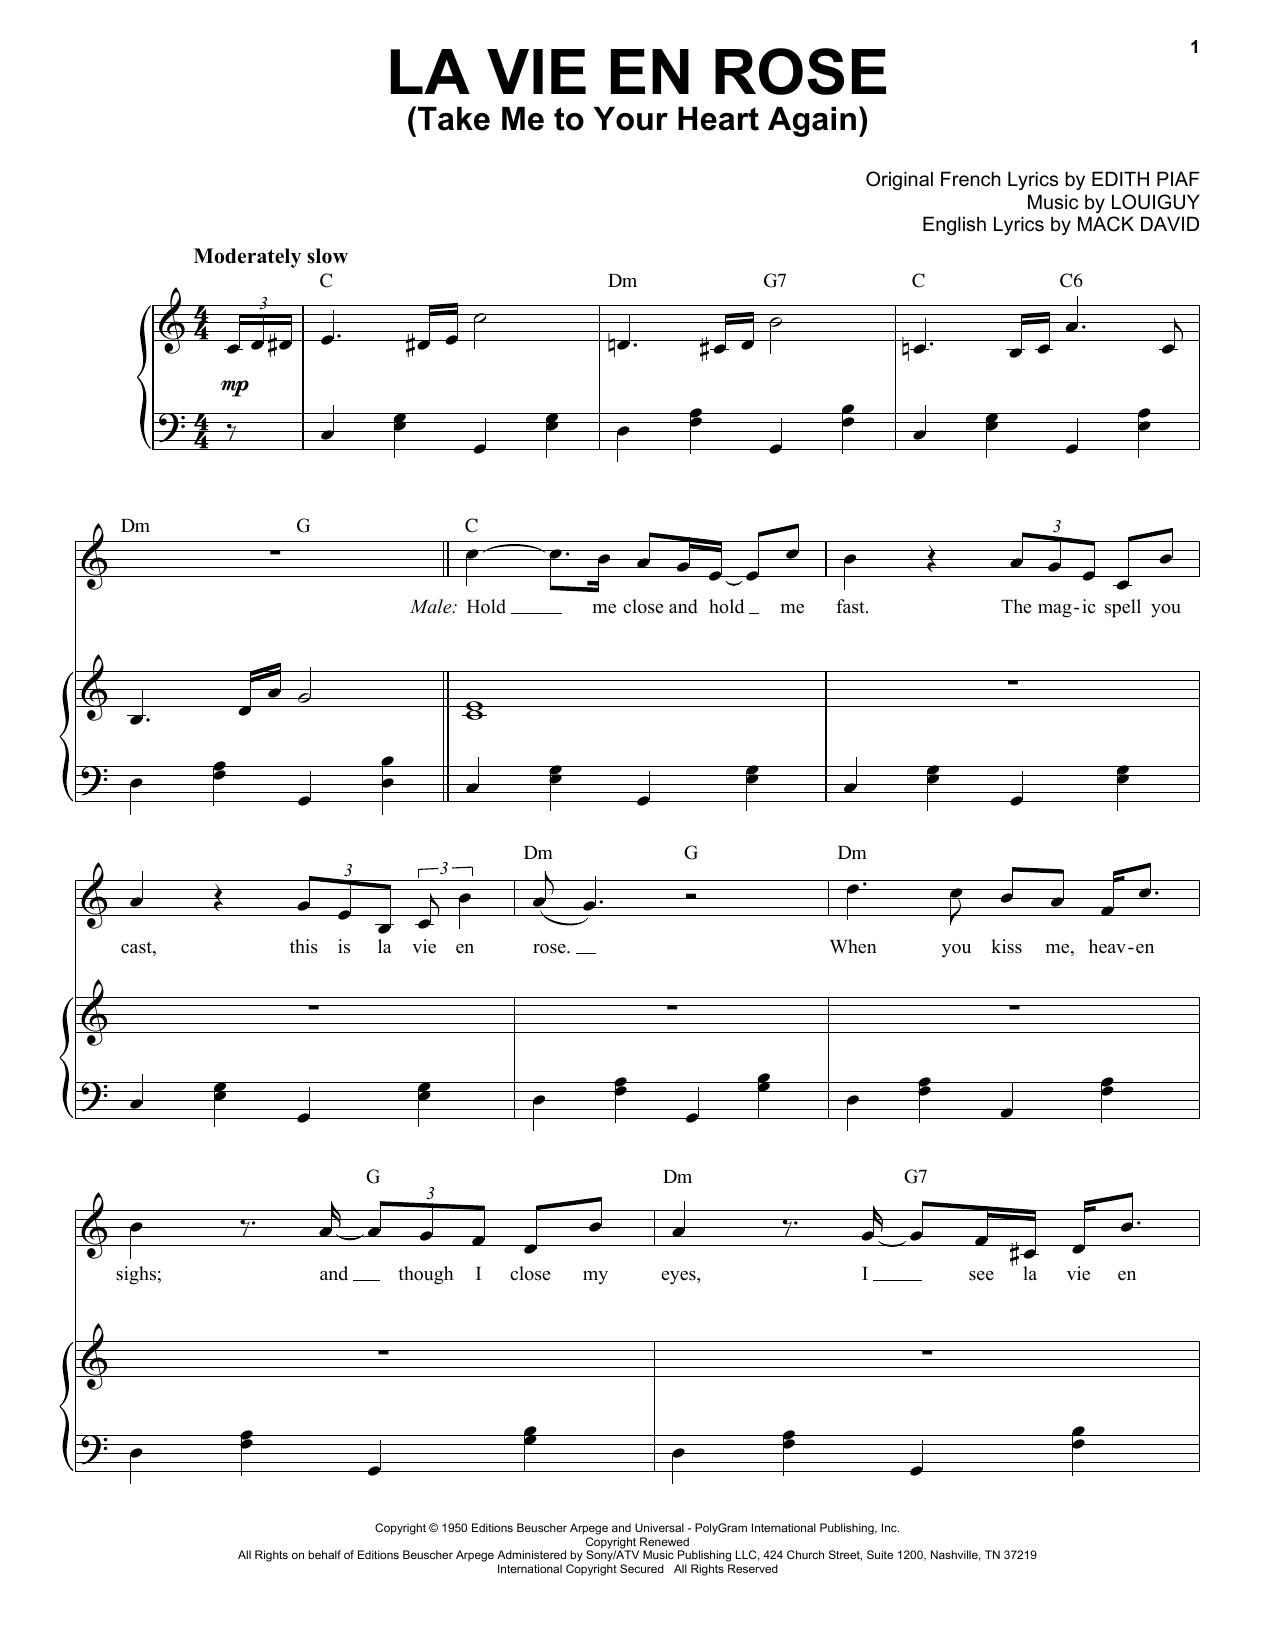 Michael Bublé La vie en rose (feat. Cécile McLorin Salvant) Sheet Music Notes & Chords for Piano & Vocal - Download or Print PDF